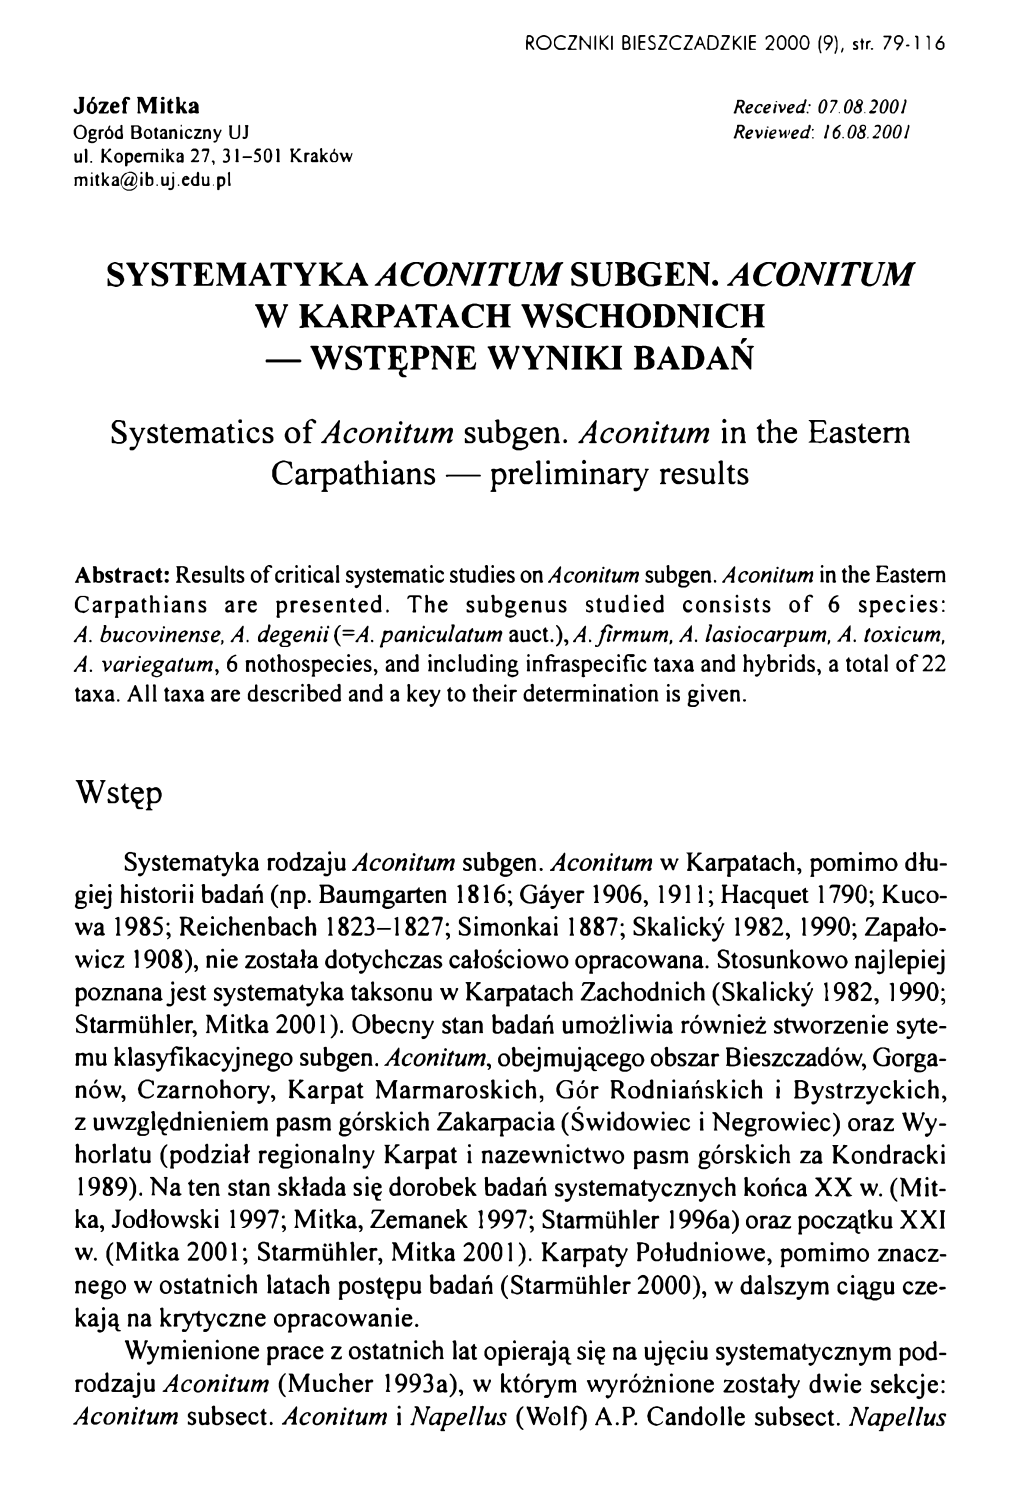 Systematyka Aconitum Subgen. Aconitum W Karpatach Wschodnich — Wstępne Wyniki Badań